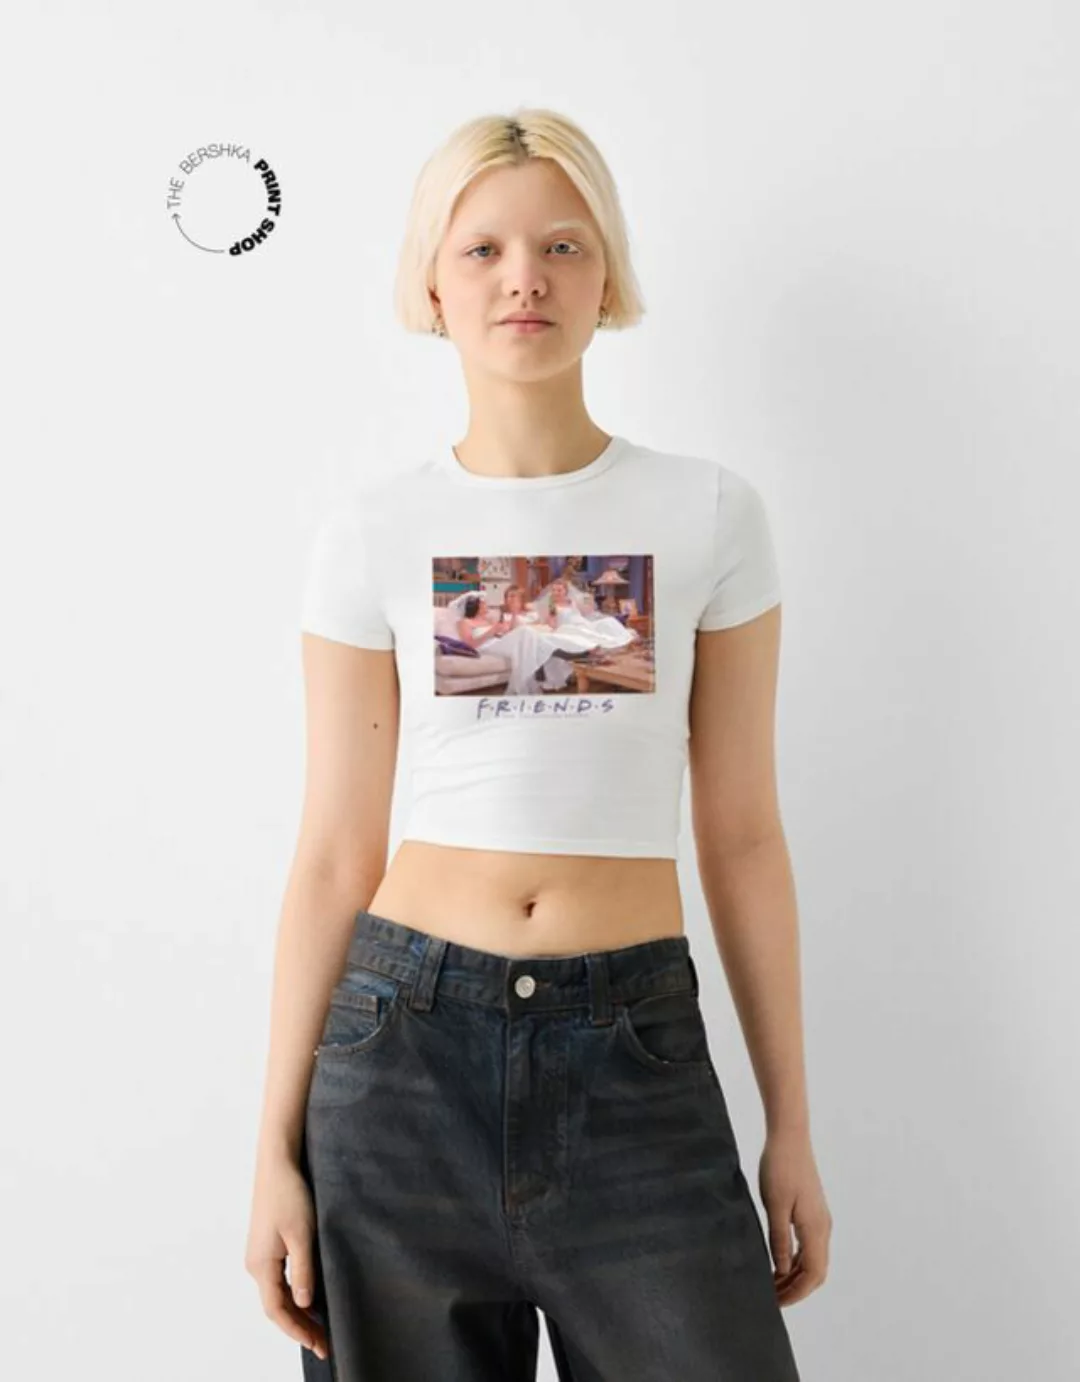 Bershka T-Shirt Friends Mit Kurzen Ärmeln Und Print Damen Xl Grbrochenes We günstig online kaufen